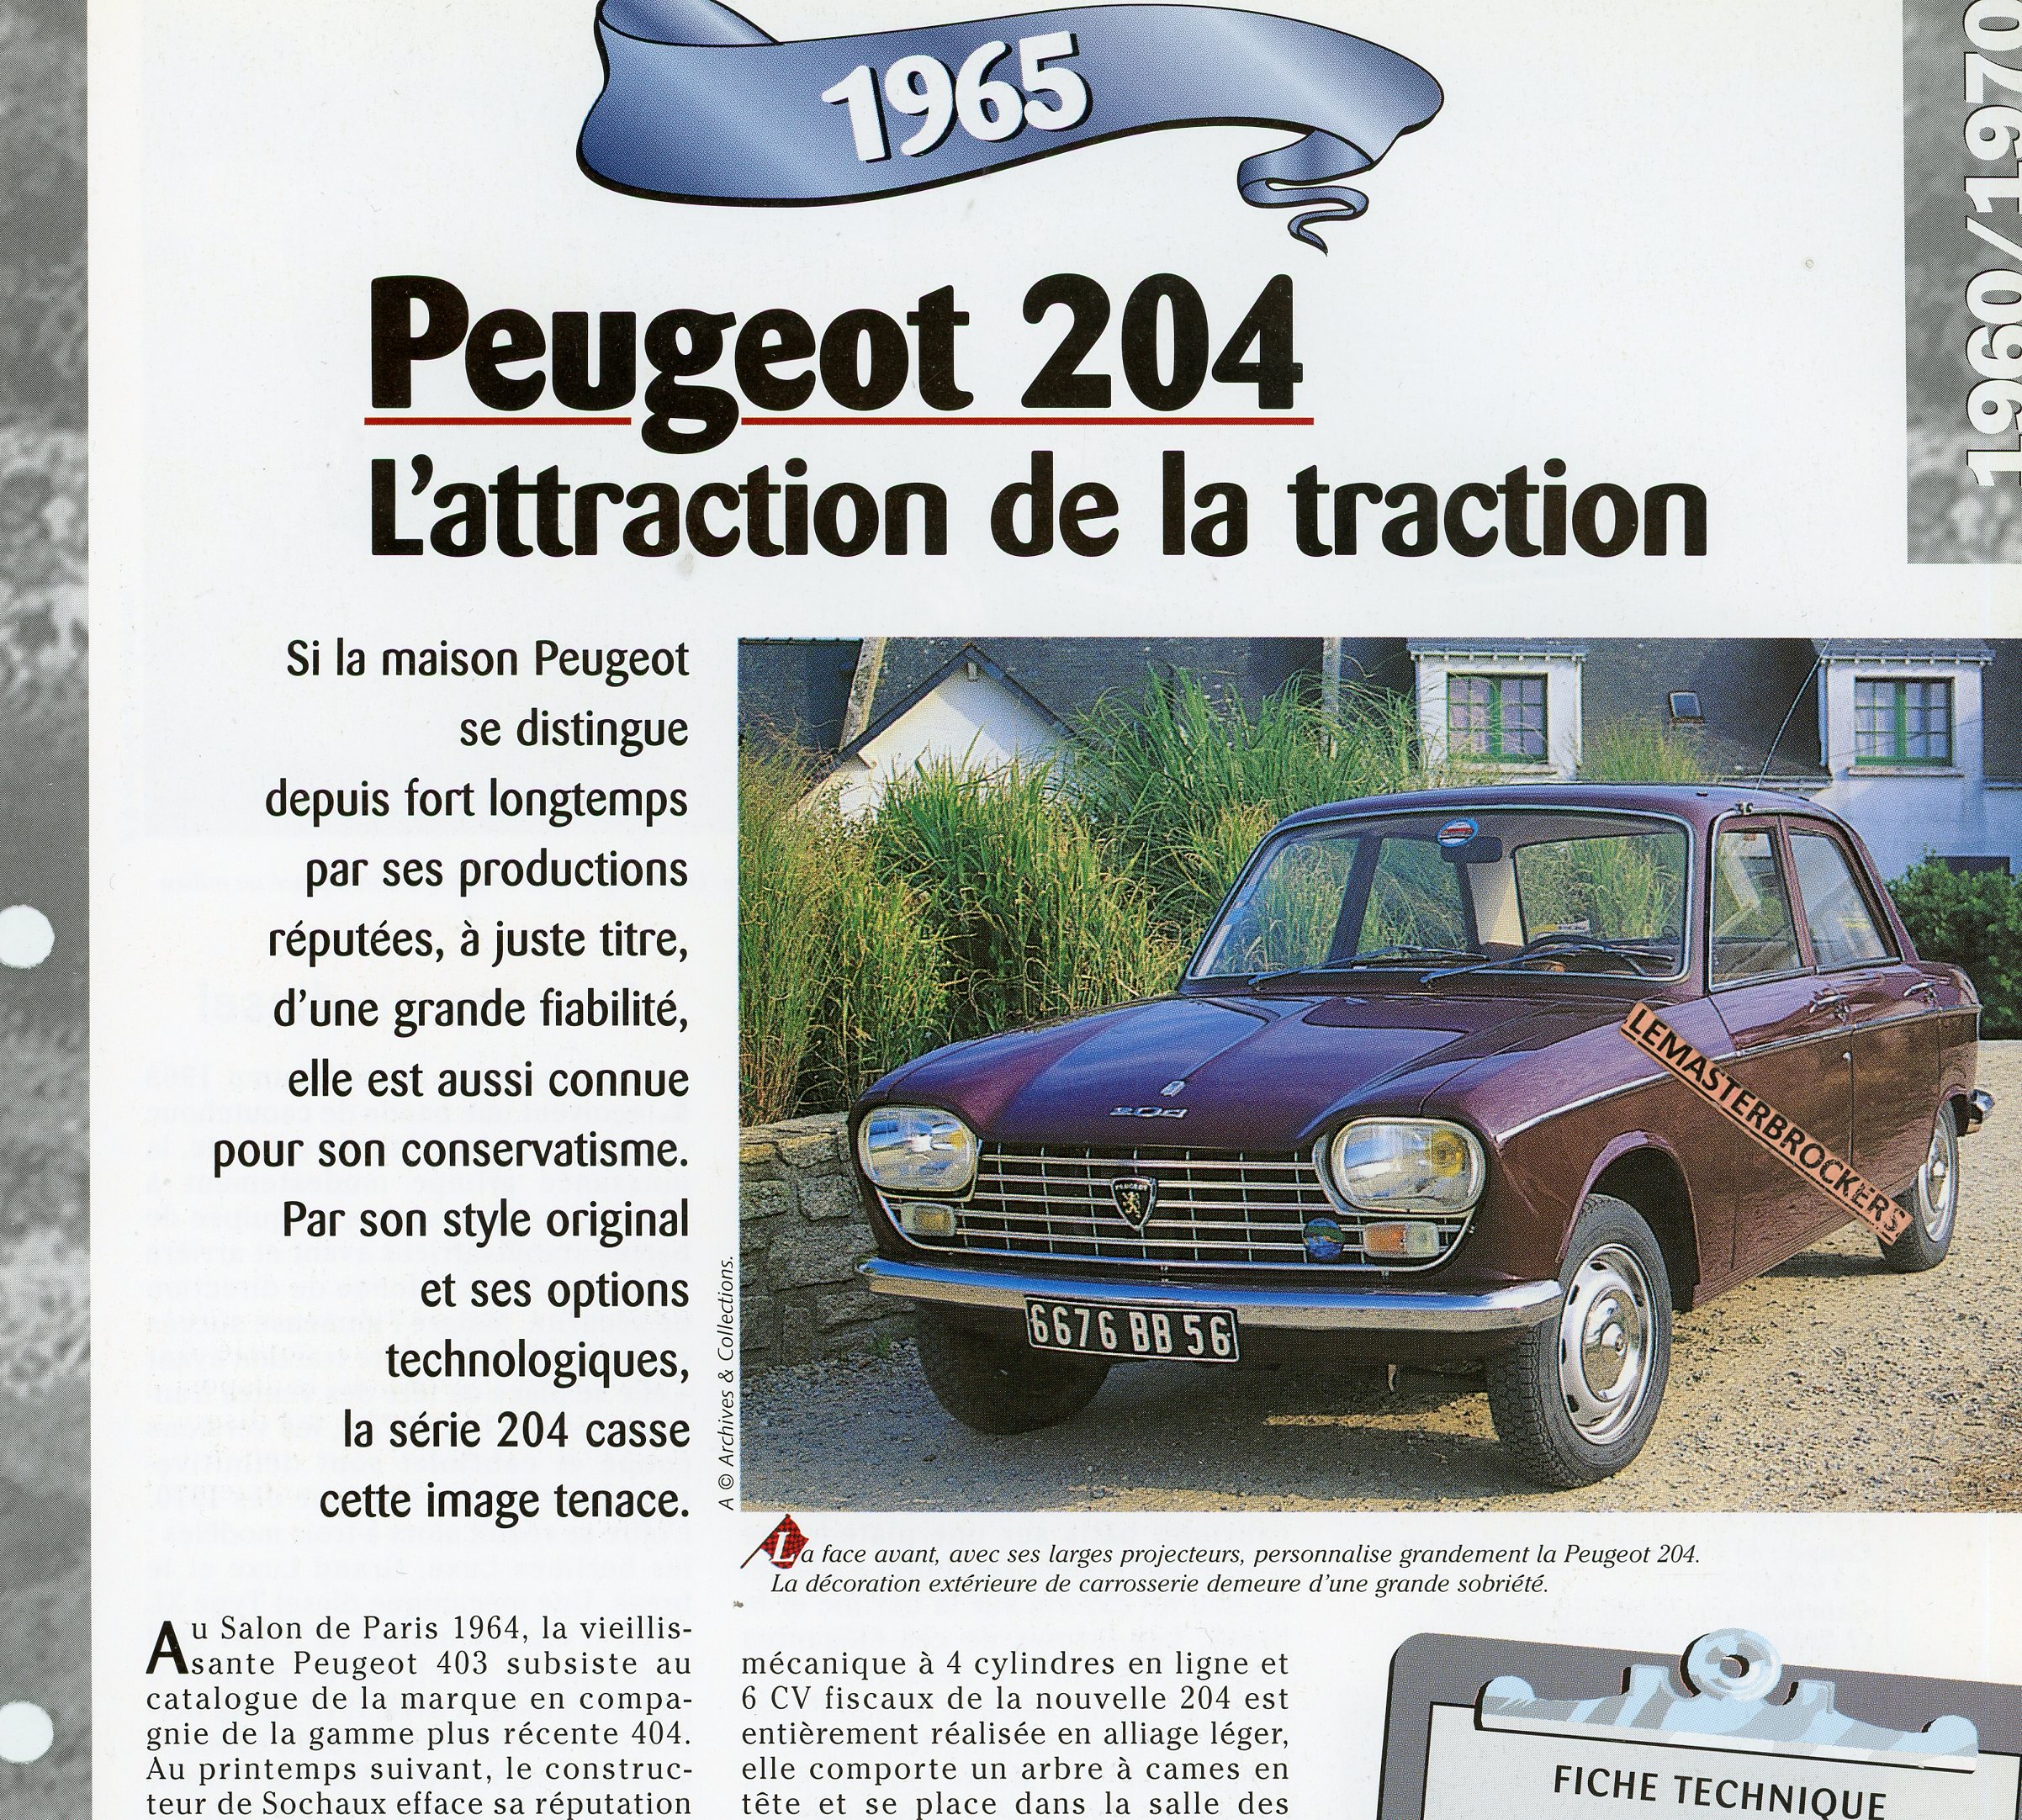 PEUGEOT-204-1965-FICHE-TECHNIQUE-VOITURE-LEMASTERBROCKERS